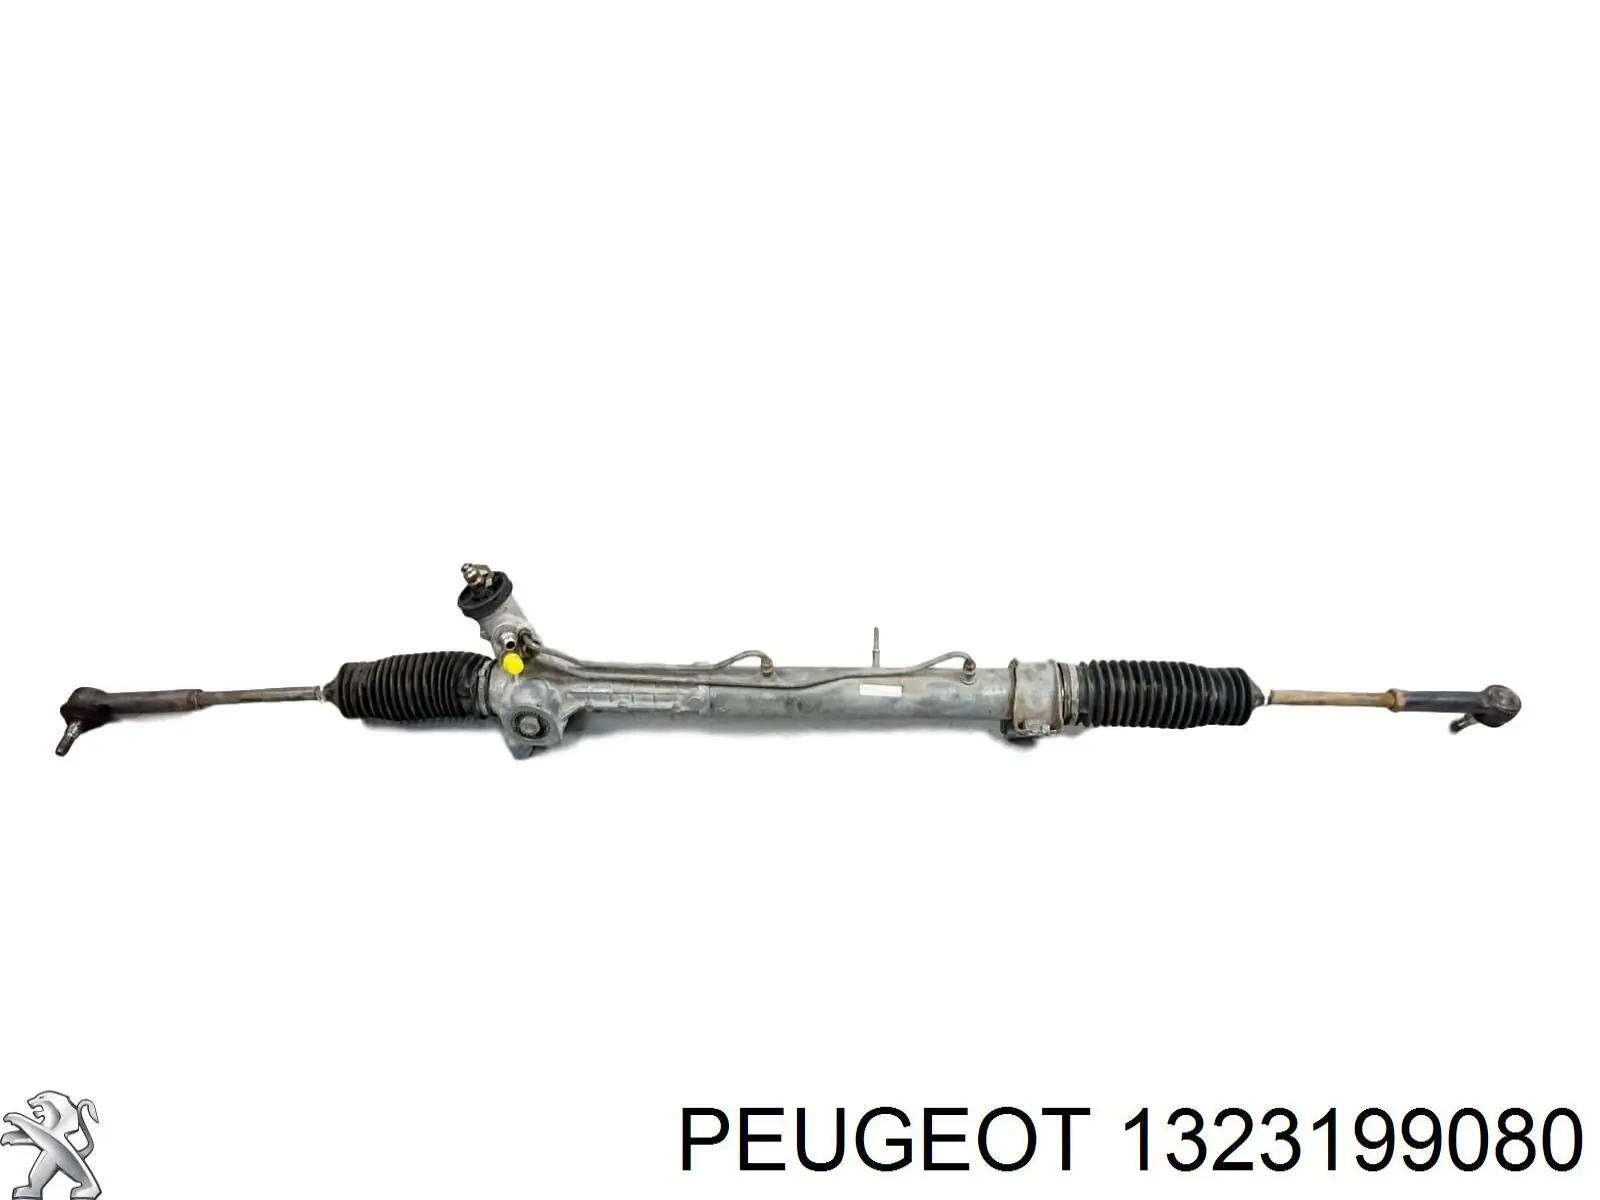 1323199080 Peugeot/Citroen cremallera de dirección